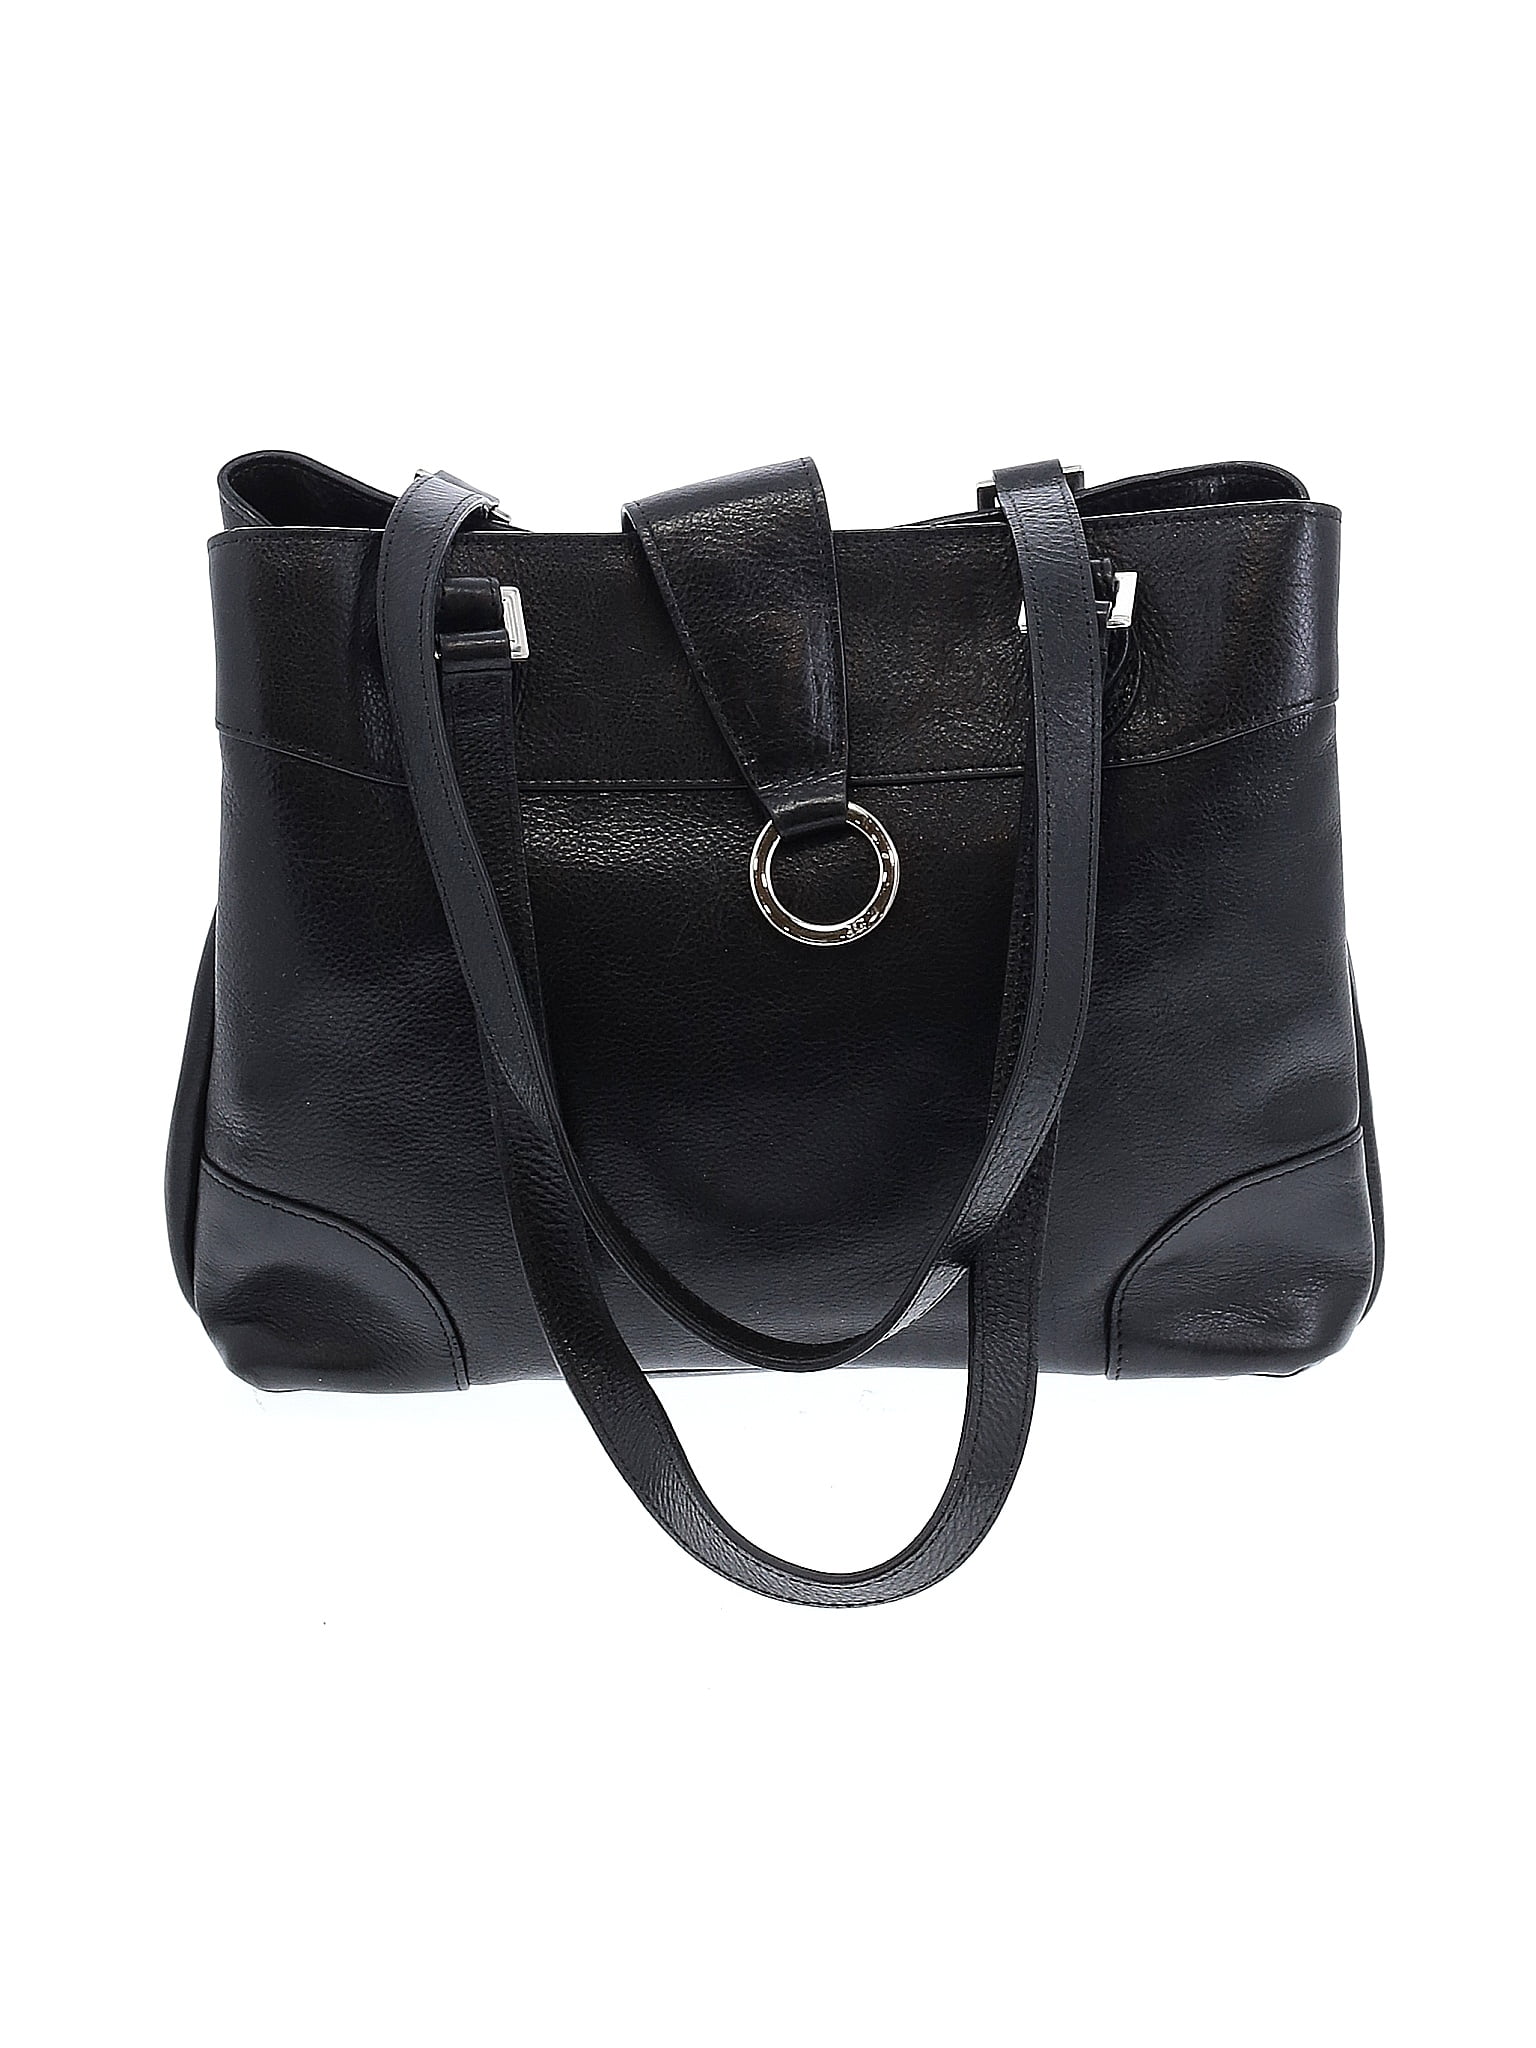 Jack Georges 100% Leather Solid Black Leather Shoulder Bag One Size ...